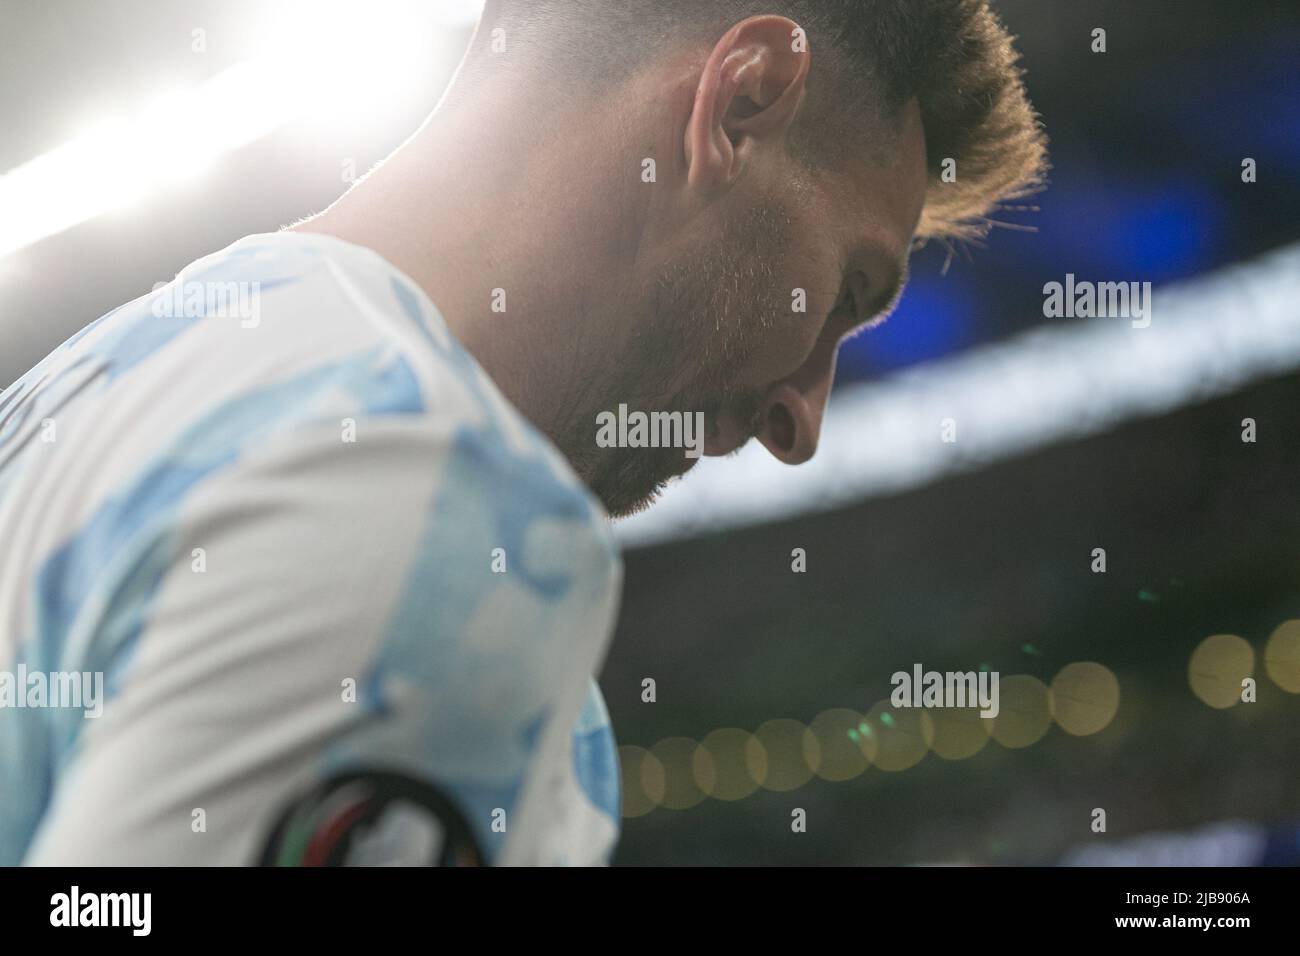 Lionel Messi (c) de l'Argentine réagit lors du match Italie contre Argentine - Finalissima 2022 au stade Wembley sur 1 juin 2022 à Londres, Angleterre.(MB Media) Banque D'Images